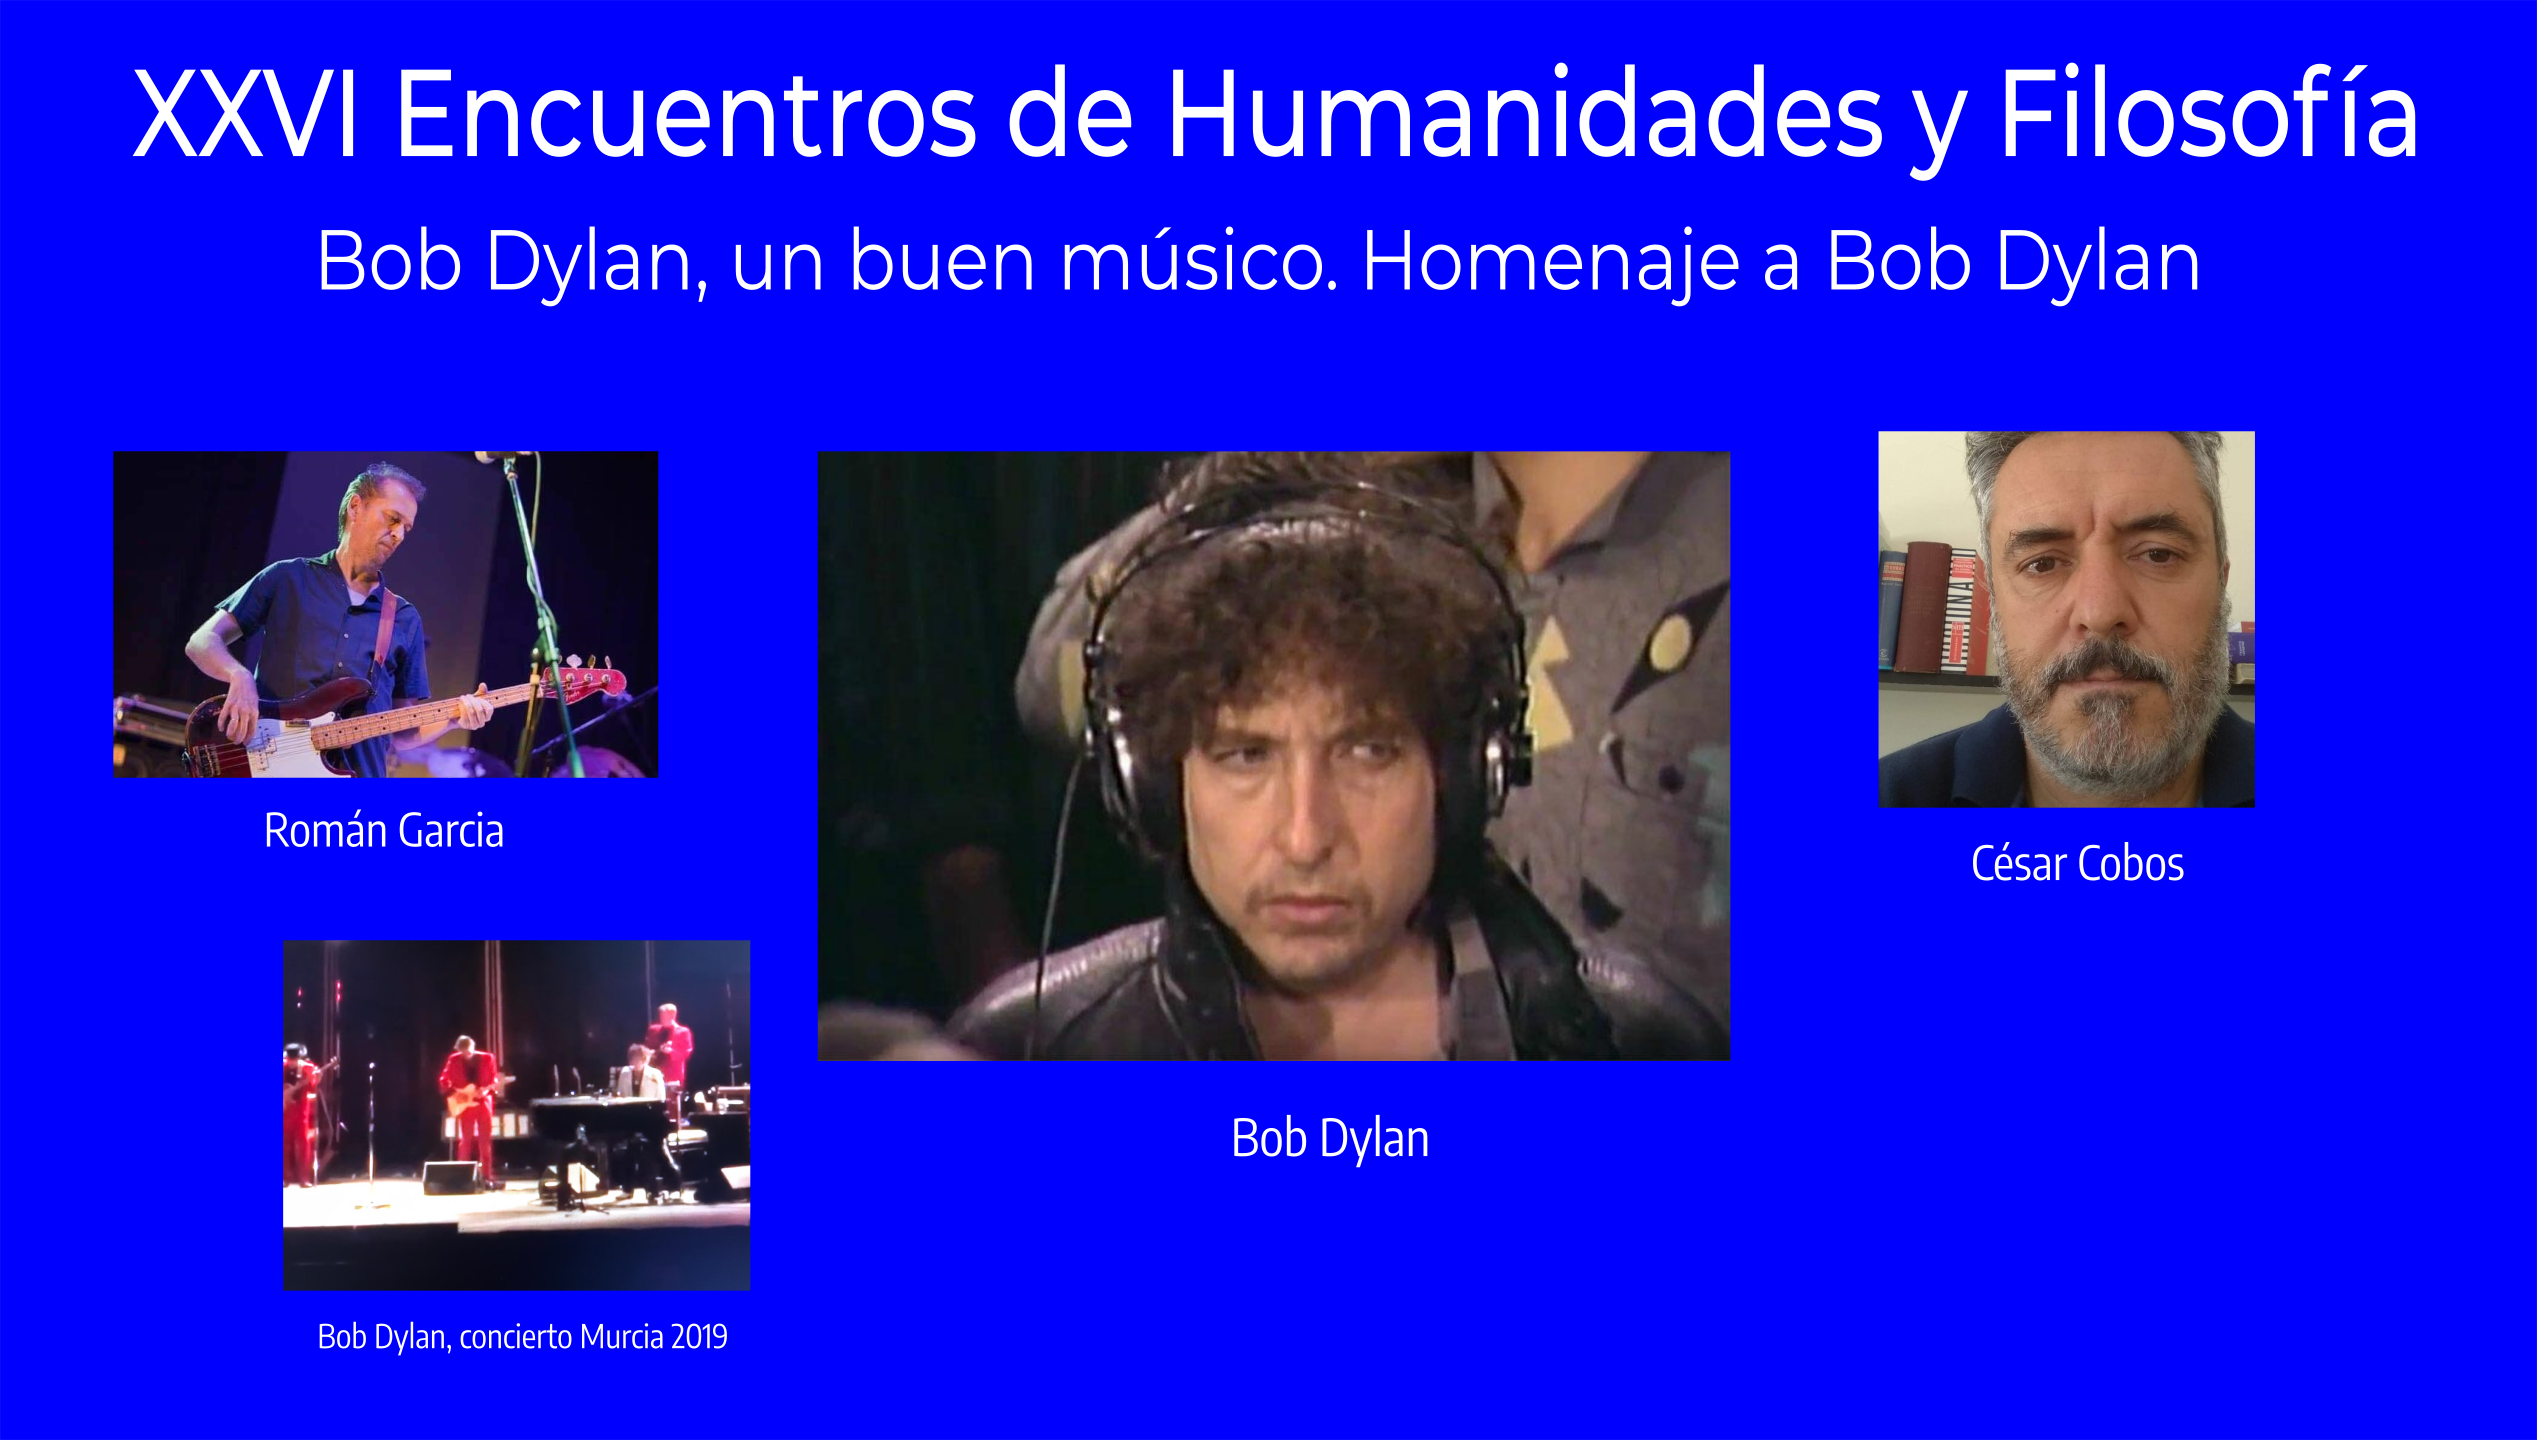 XXVI Encuentros de Humanidades y Filosfofía, Bob Dylan, un buen músico. Homenaje a Bob Dylan con César Cobos  y Román García.